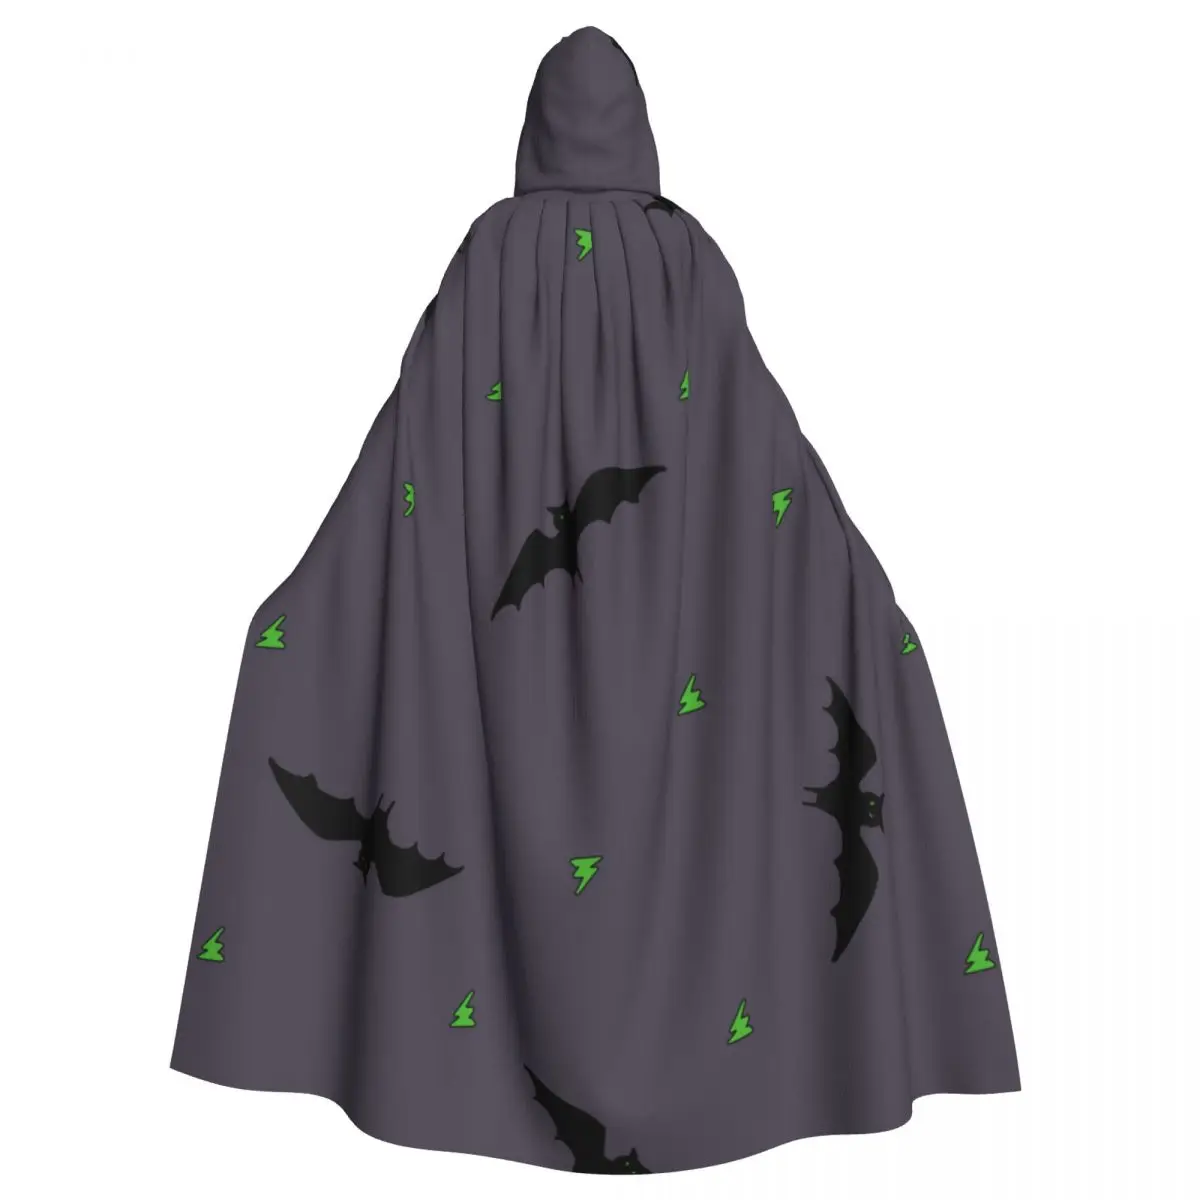 

Hooded Cloak Unisex Cloak with Hood Cute Bat In The Night Sky Cloak Vampire Witch Cape Cosplay Costume